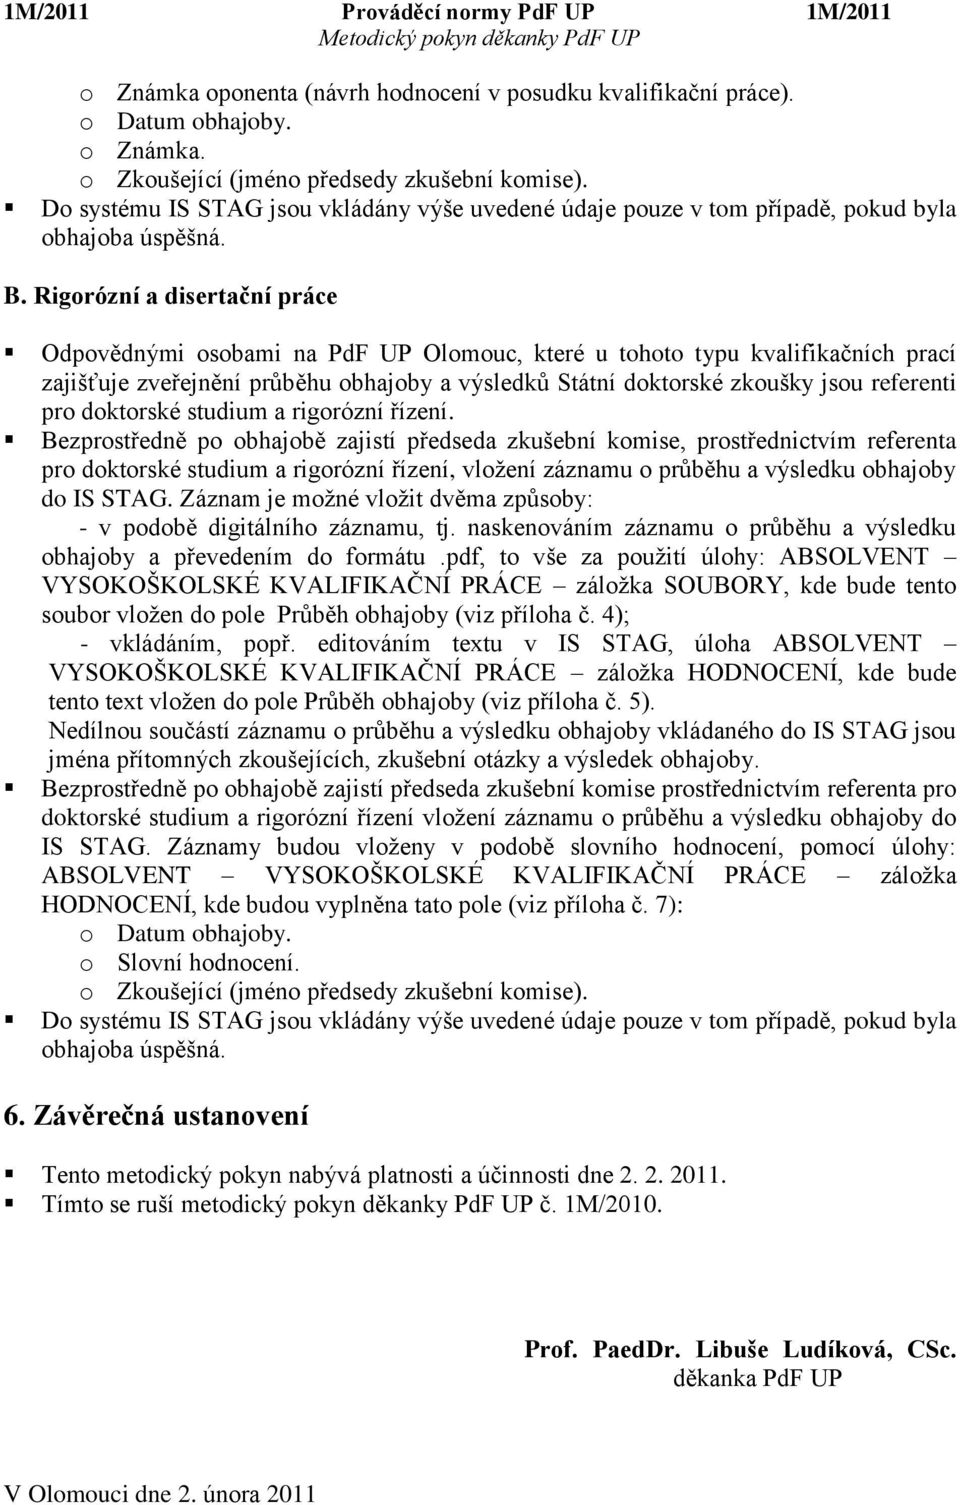 Rigorózní a disertační práce Odpovědnými osobami na PdF UP Olomouc, které u tohoto typu kvalifikačních prací zajišťuje zveřejnění průběhu obhajoby a výsledků Státní doktorské zkoušky jsou referenti